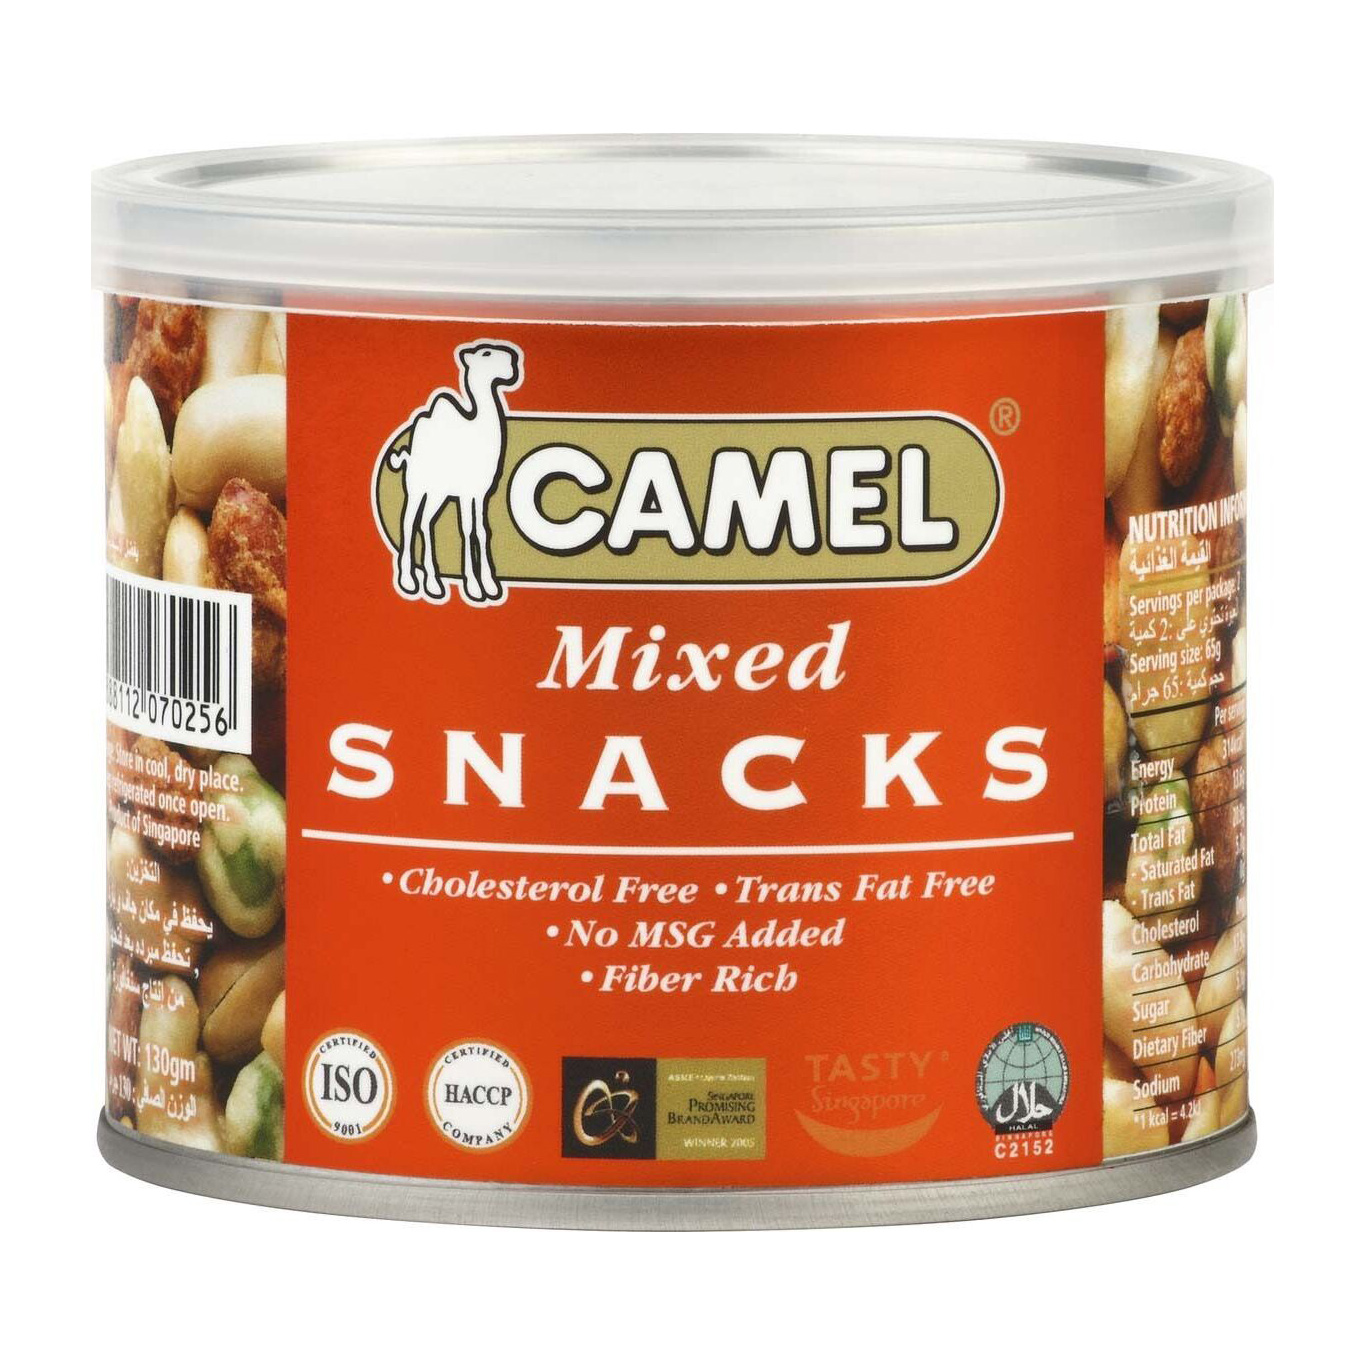 Смесь Camel из различных орехов, бобов, горошка Mixed snacks 130 г